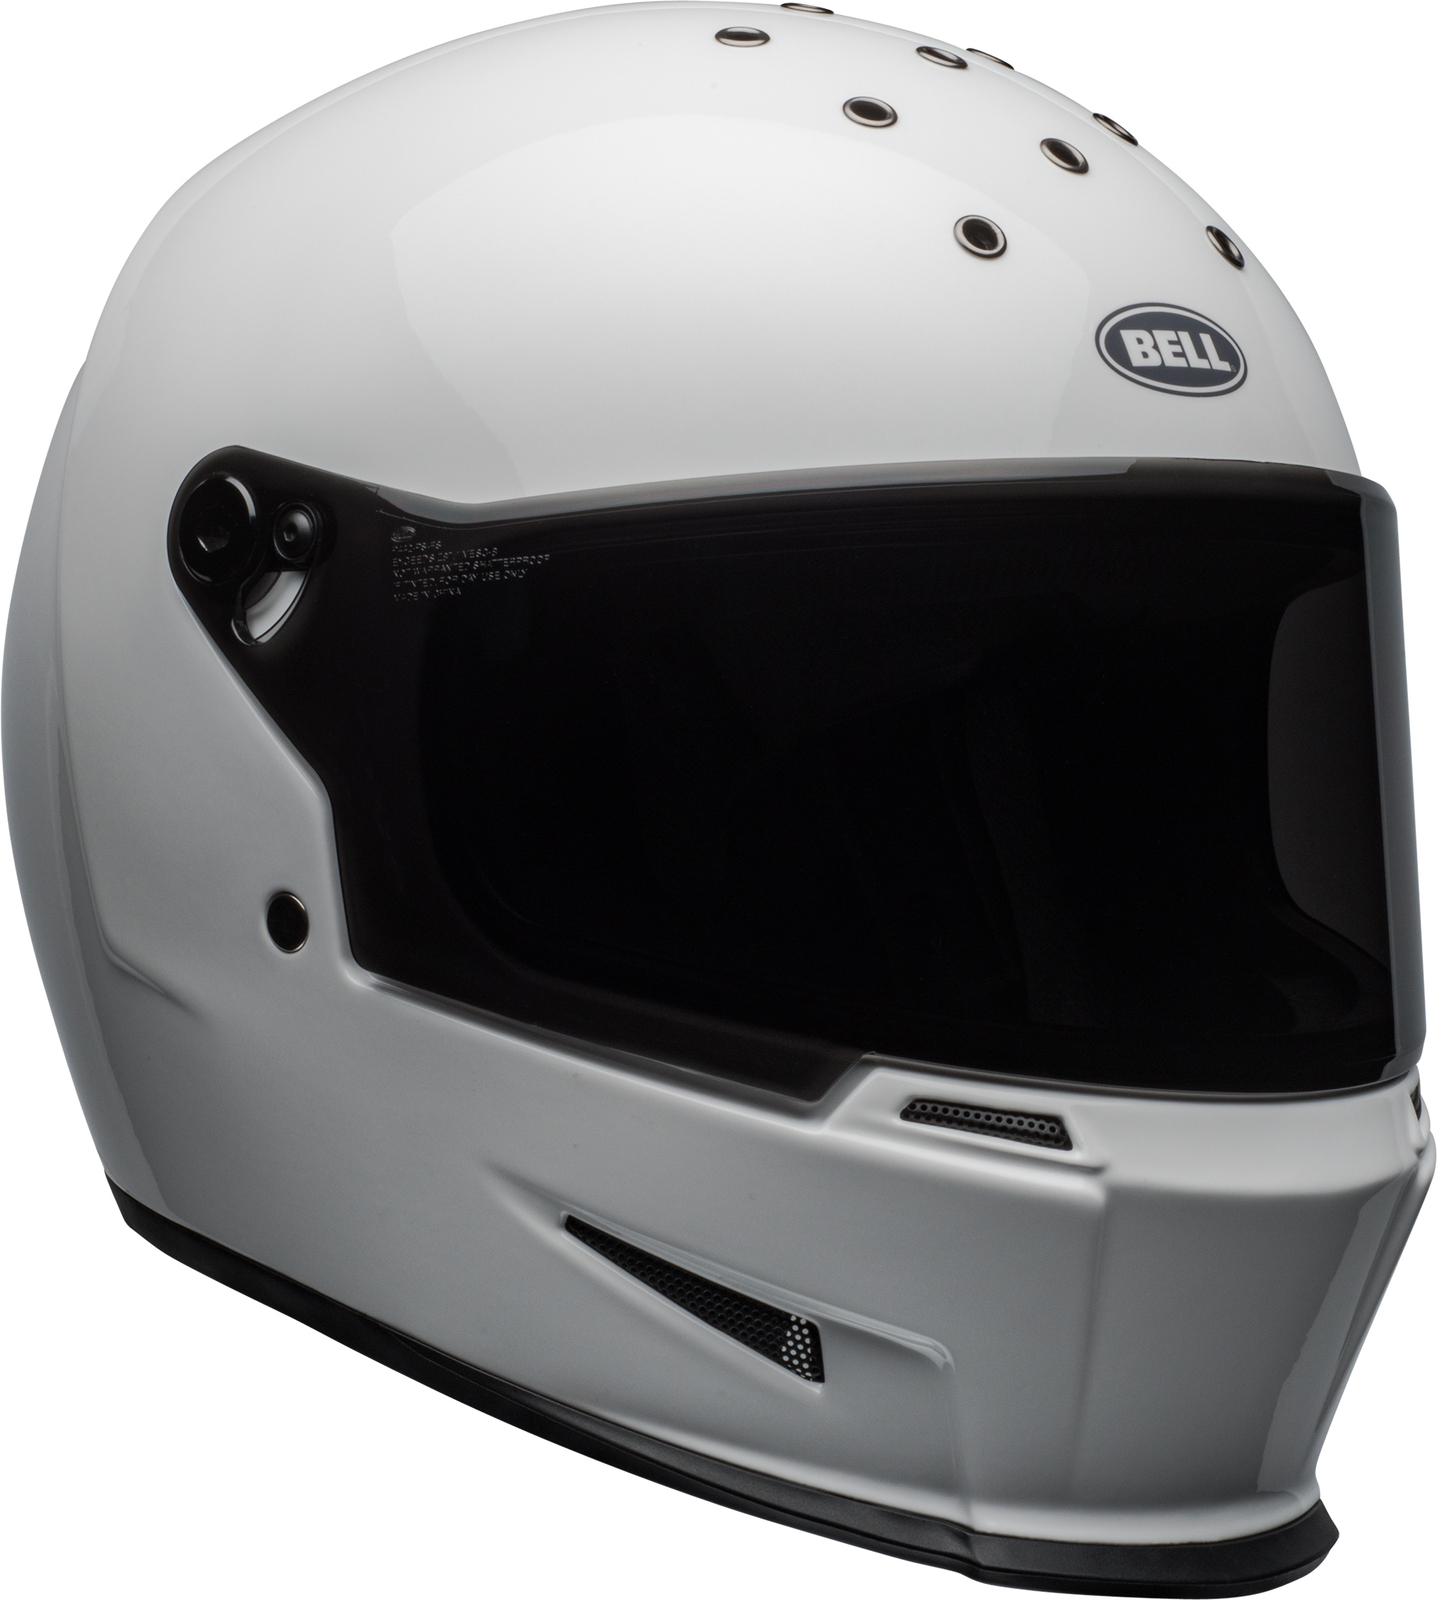 今週まで】Bell Eliminator Helmet ホワイト M/Lサイズ 【別倉庫からの